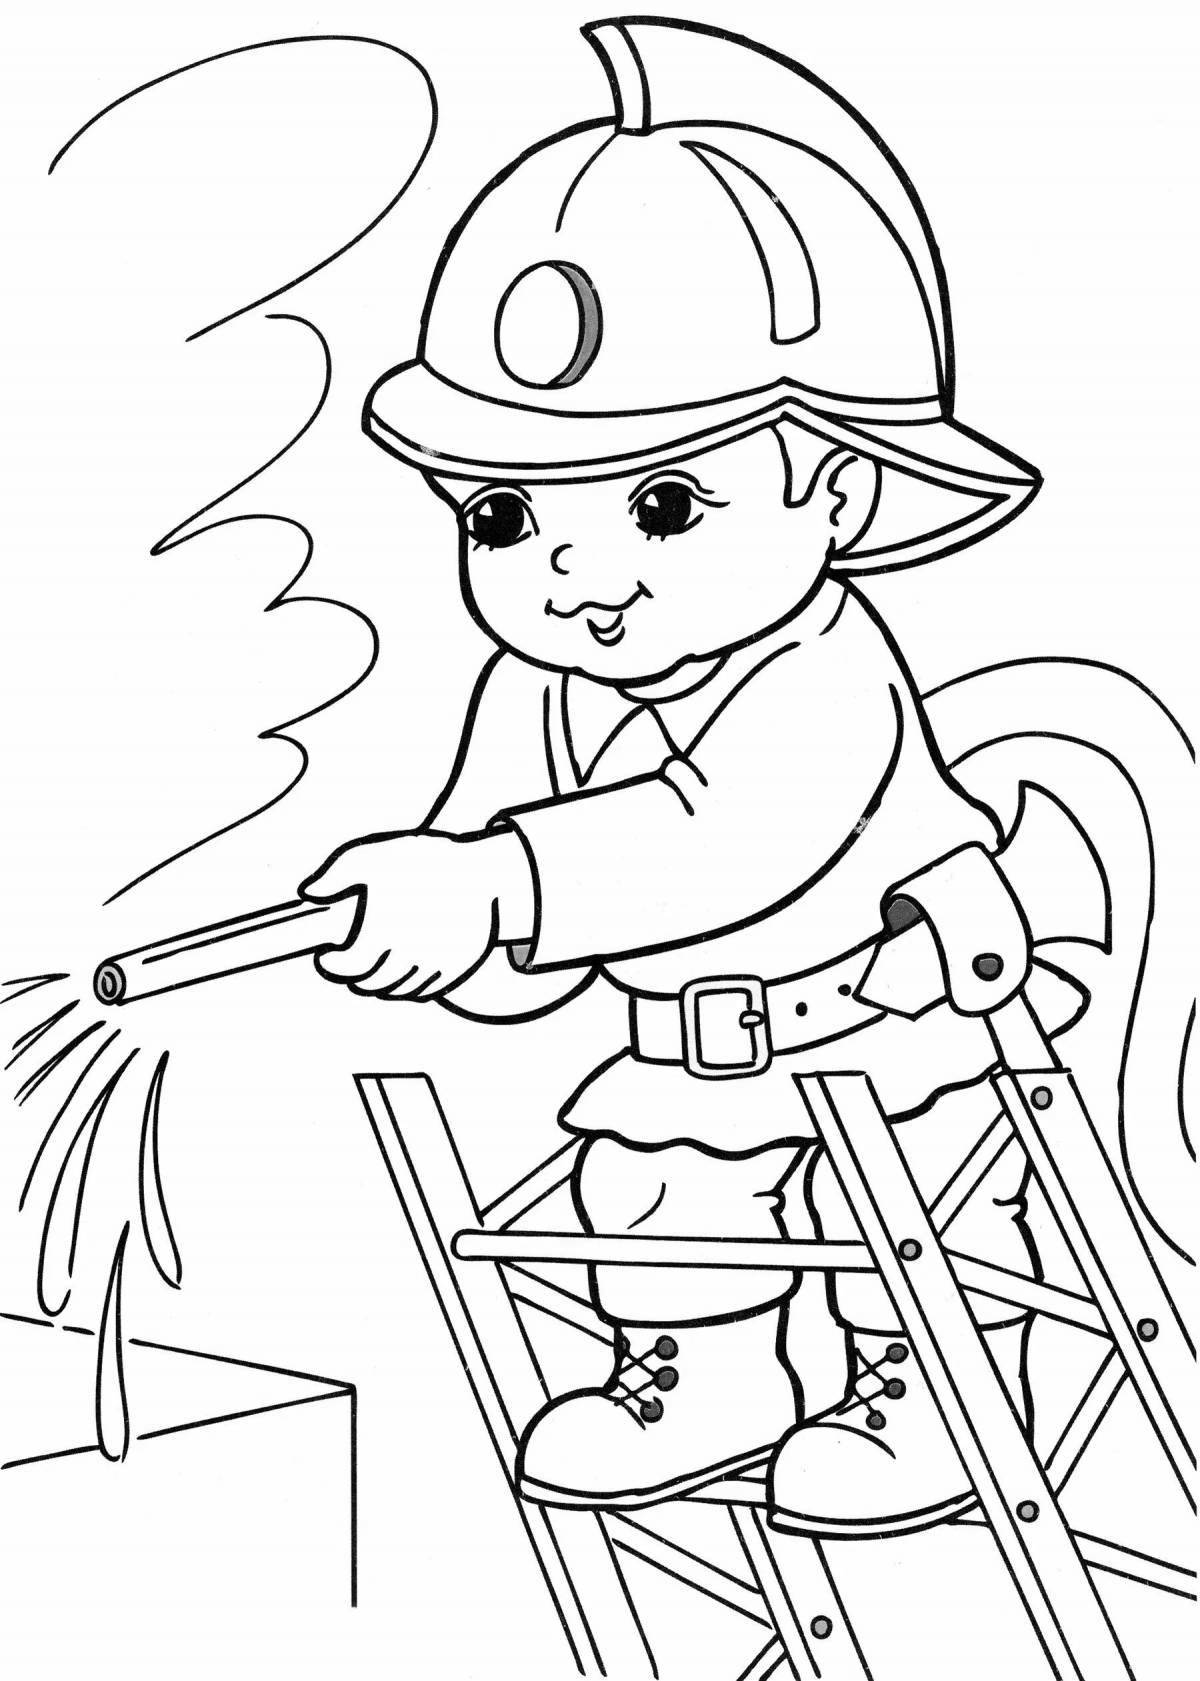 Пожарный - раскраски для детей распечатать на А4 | ColoRate